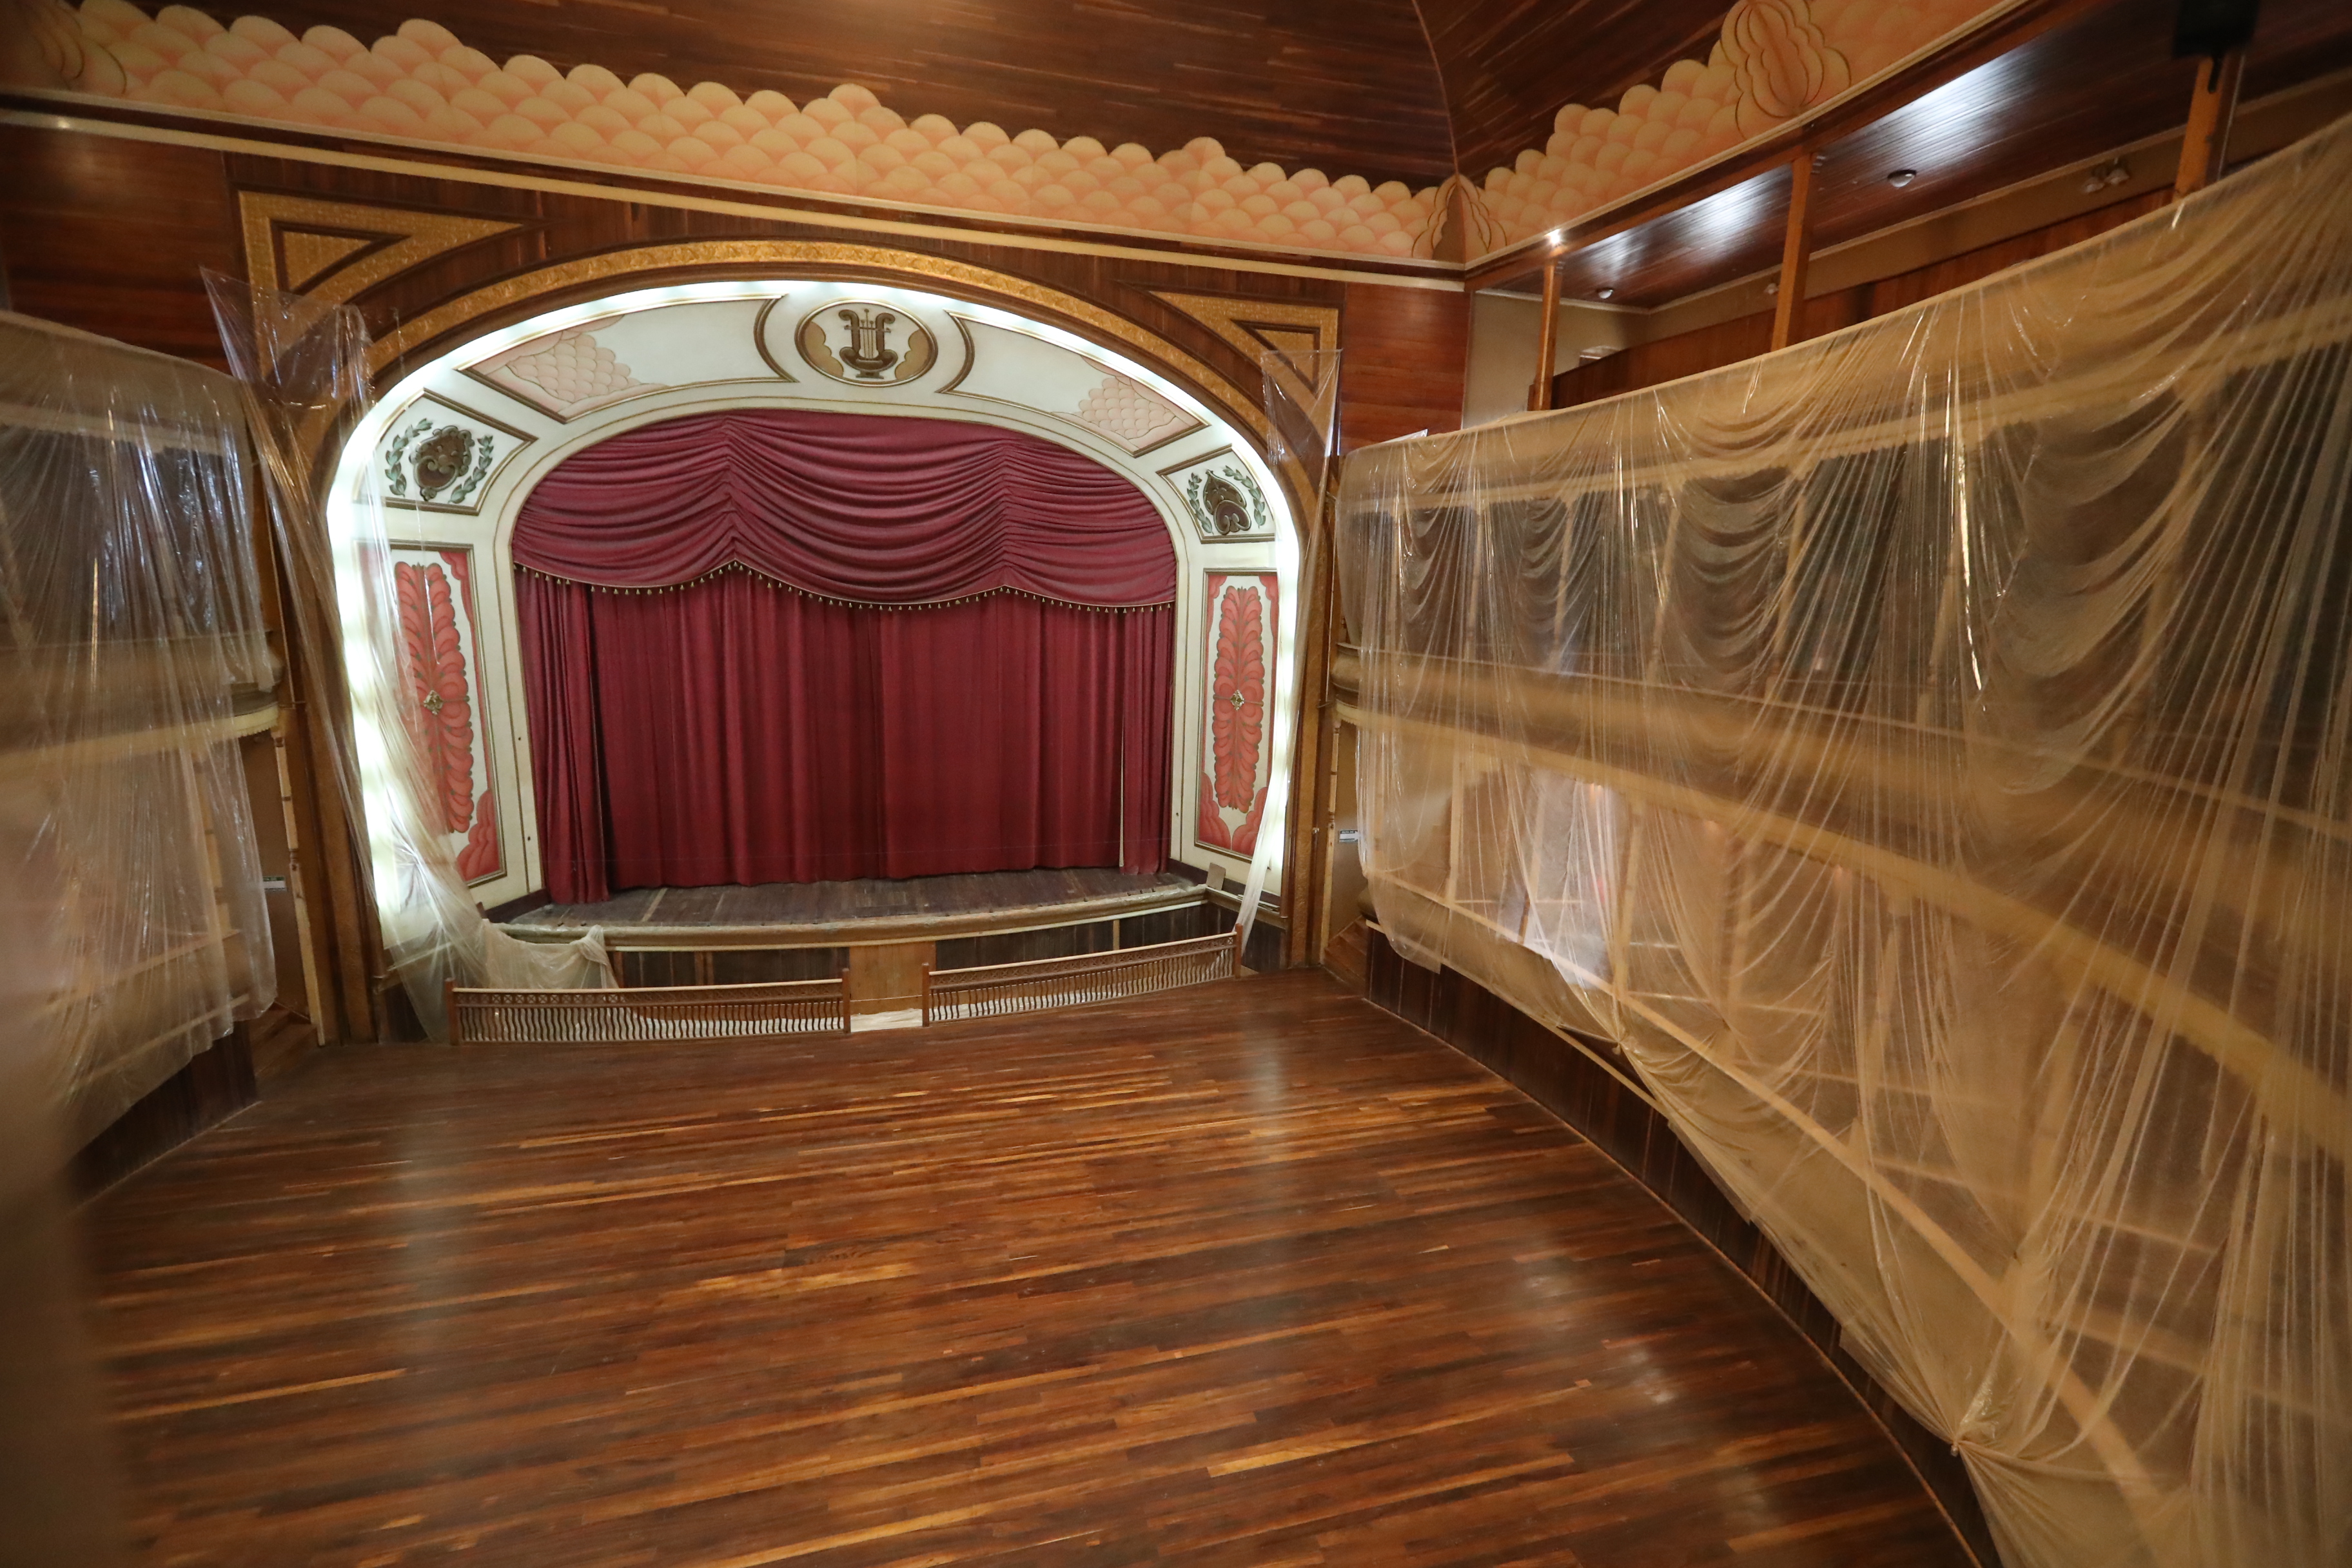 En los últimos meses el Teatro Municipal de Quetzaltenango está en un proceso de restauración. (Foto Prensa Libre: Archivo) 